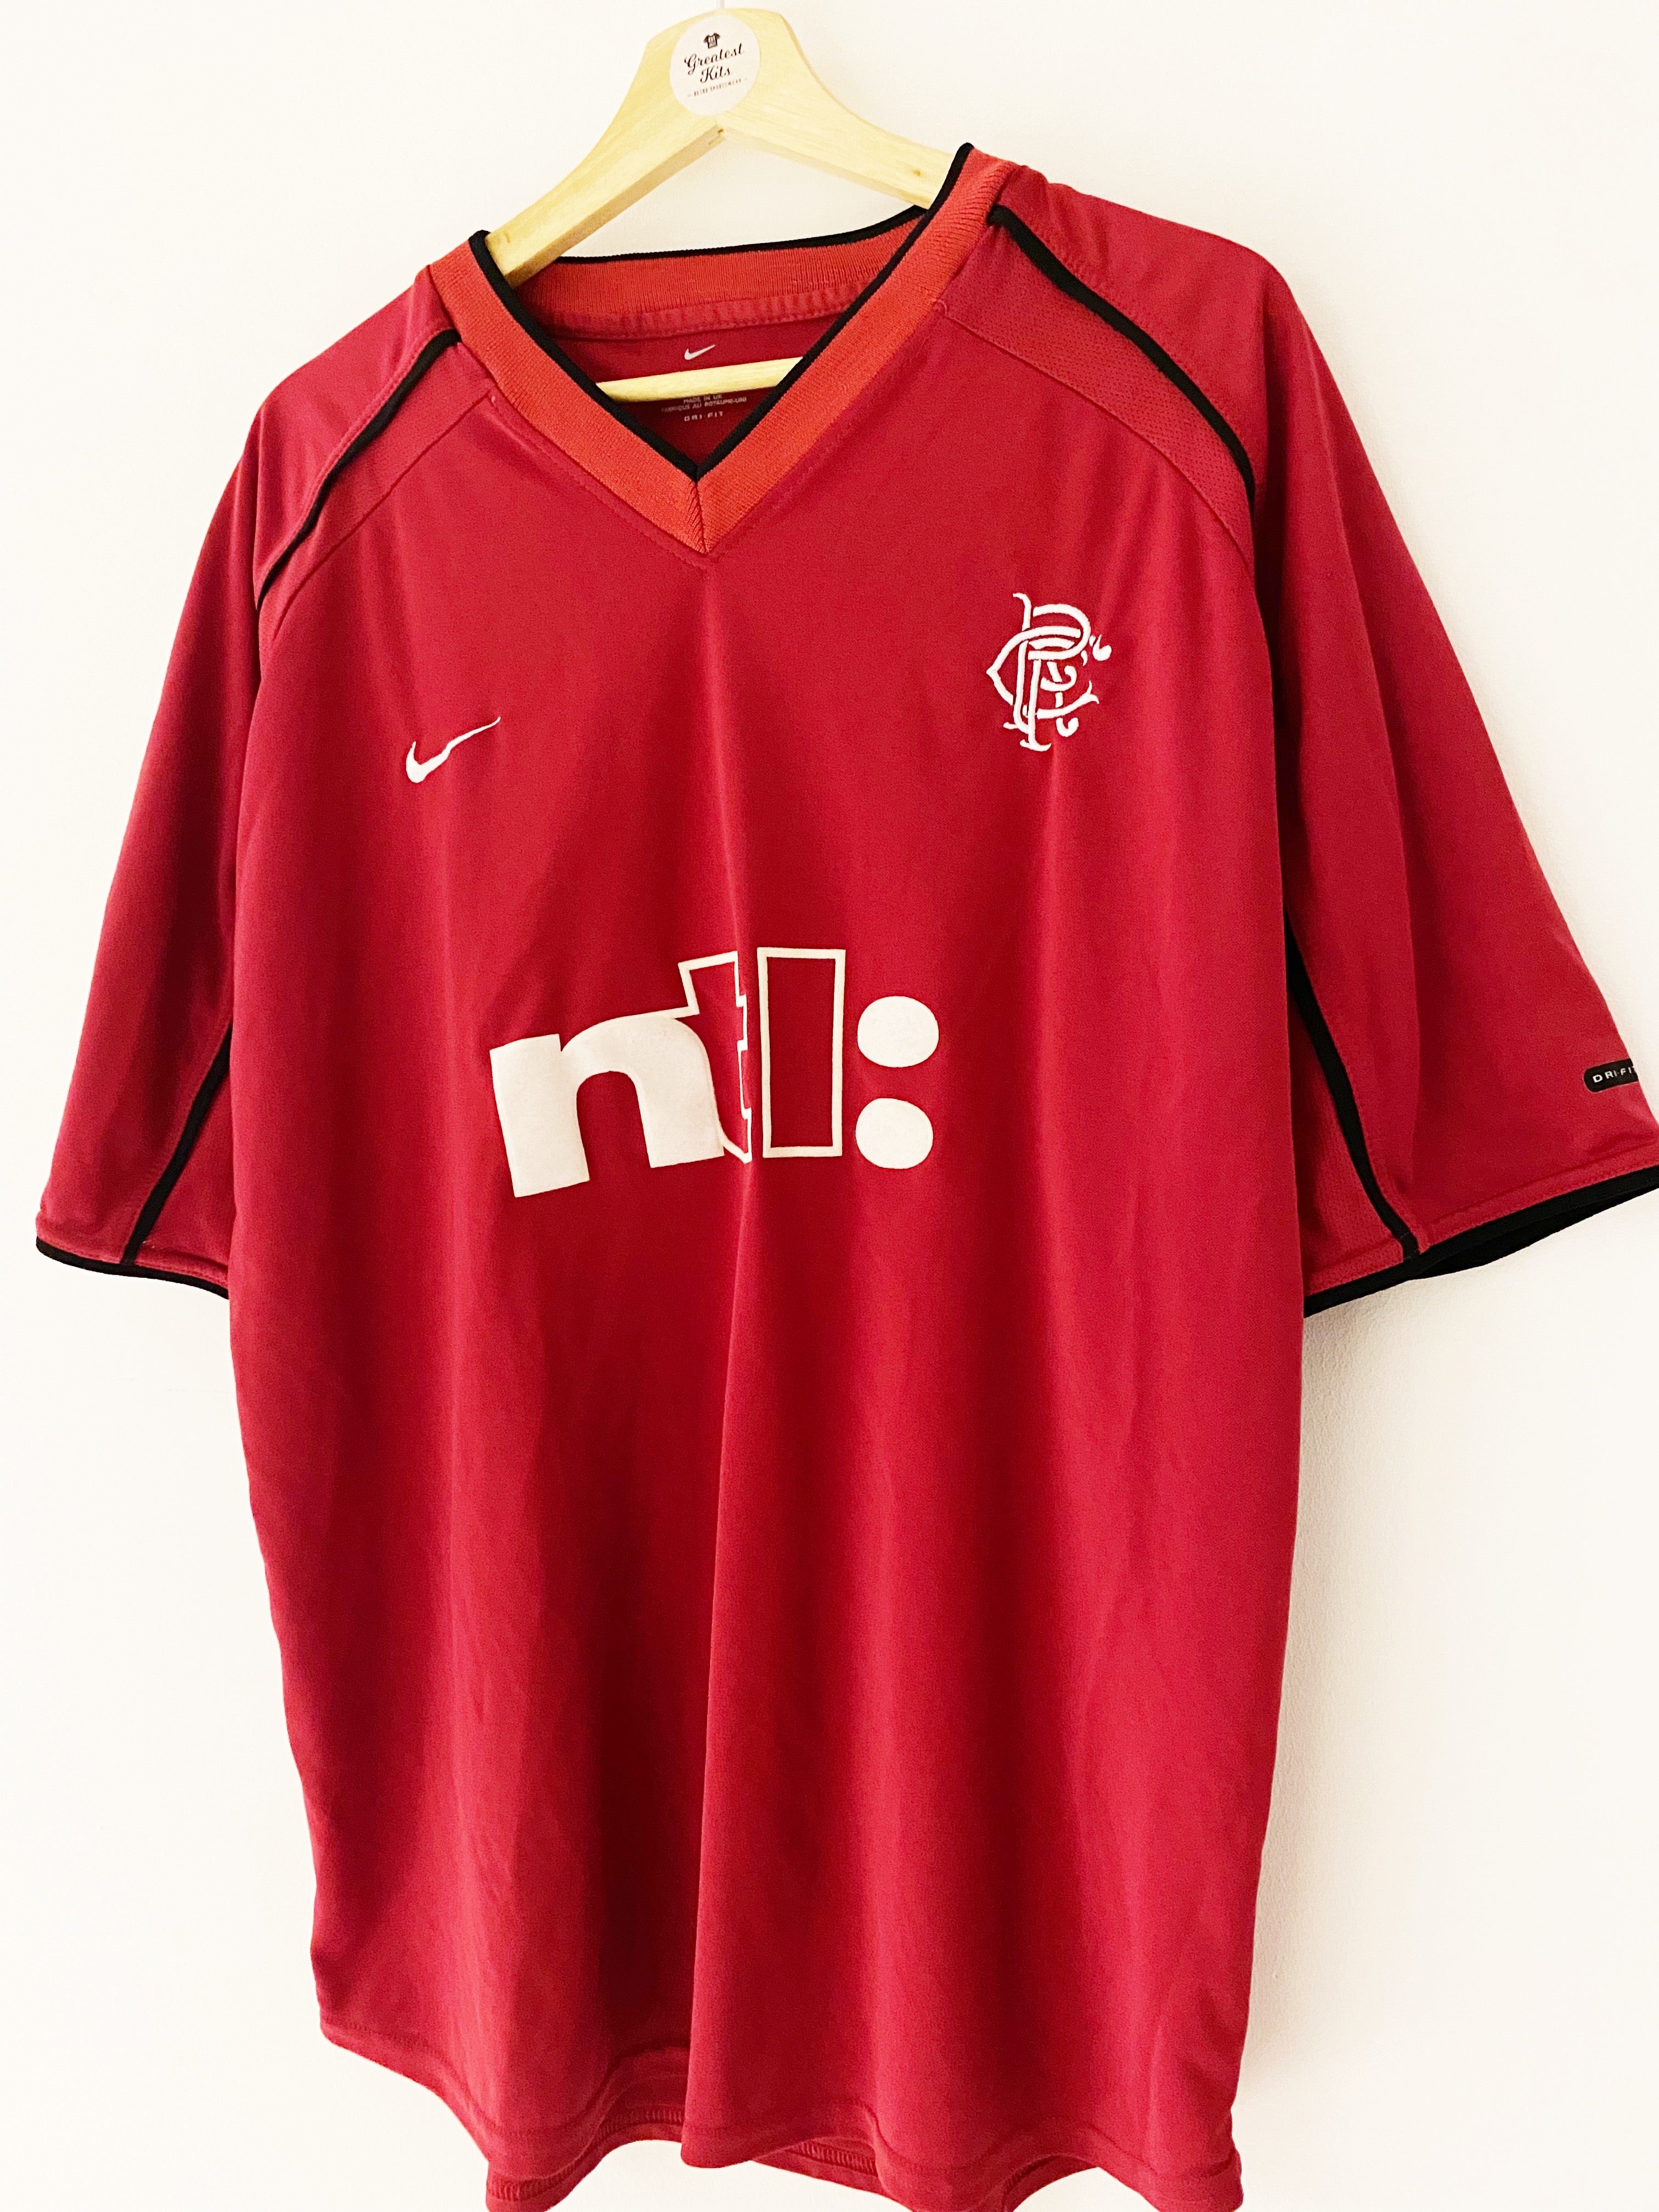 2000/01 Rangers Third Shirt (XL) 8.5/10